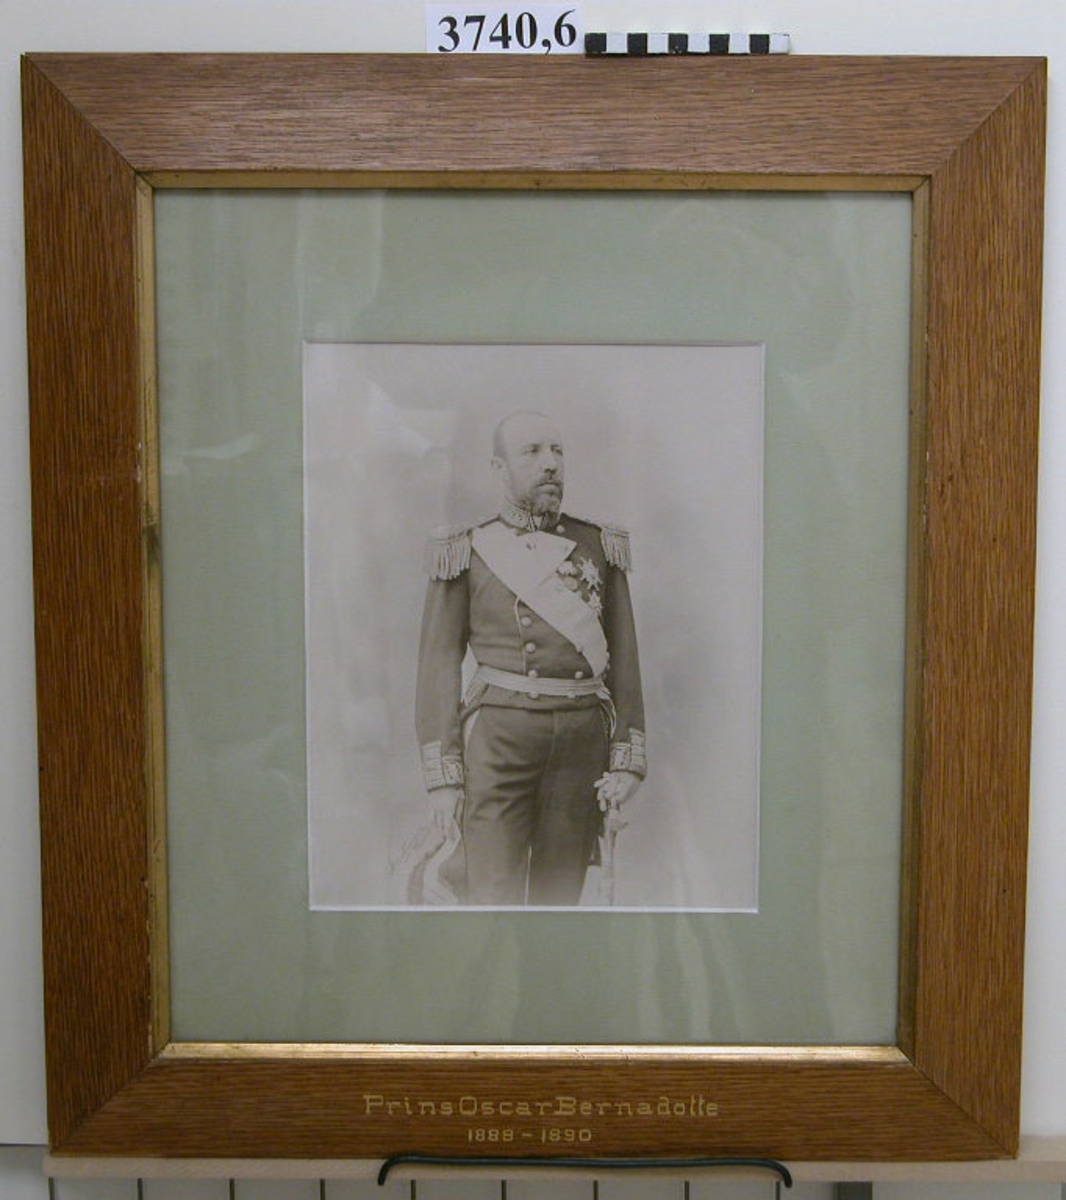 Fotografi Prins Oscar Bernadotte 1888-90.
25 st fotografier inom glas och ram, av ekfanér, av porträtt av cheferna för Skeppsgossekåren i Karlskrona åren 1875 - 1939.
MM3740:1-25.